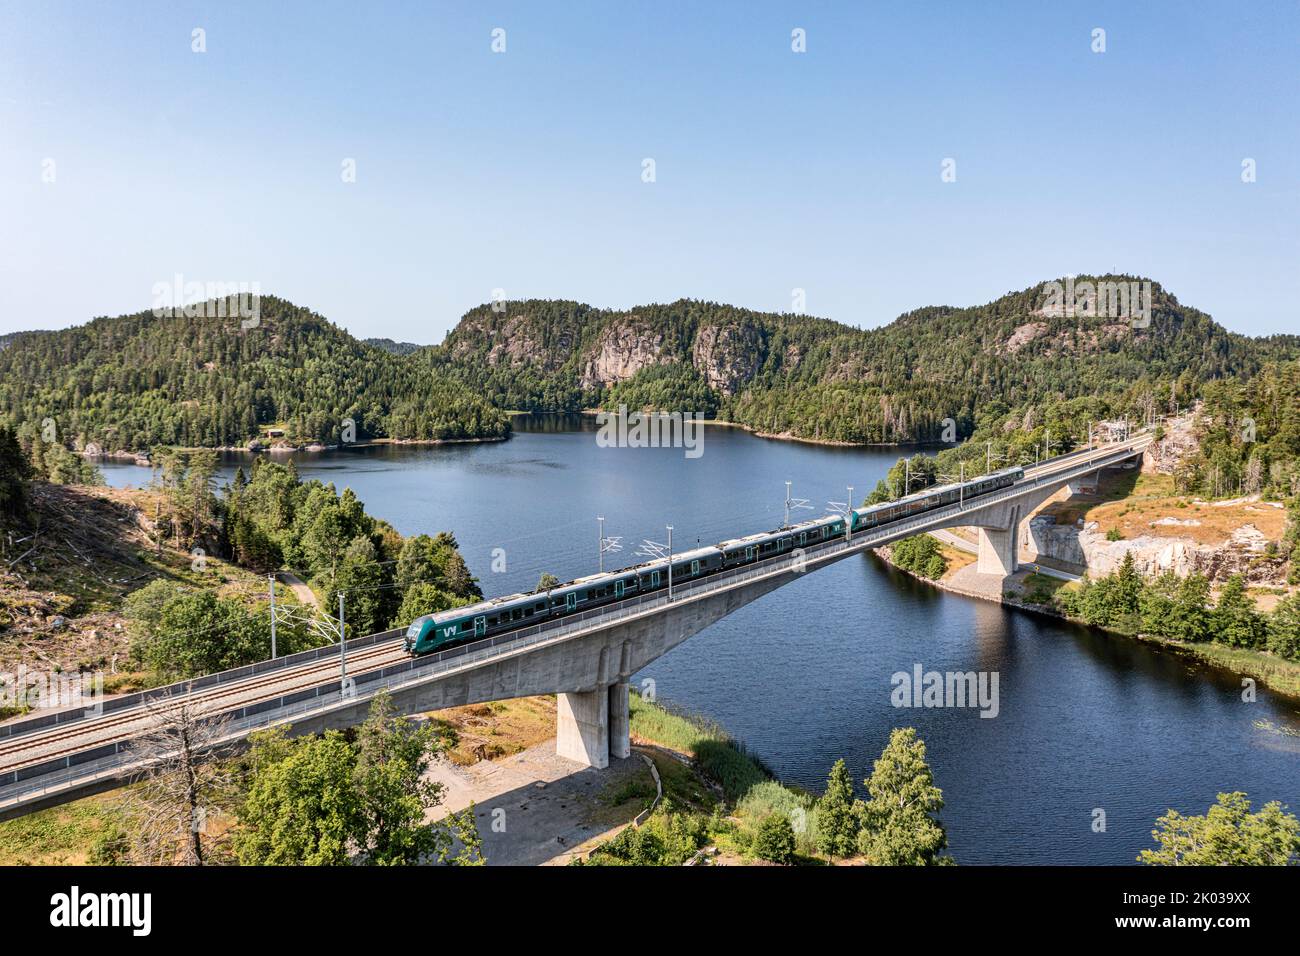 Norwegen, Vestfold Og Telemark, Larvik, Brücke, Zug, see, Wald, Berge, Landschaftsbild Stockfoto